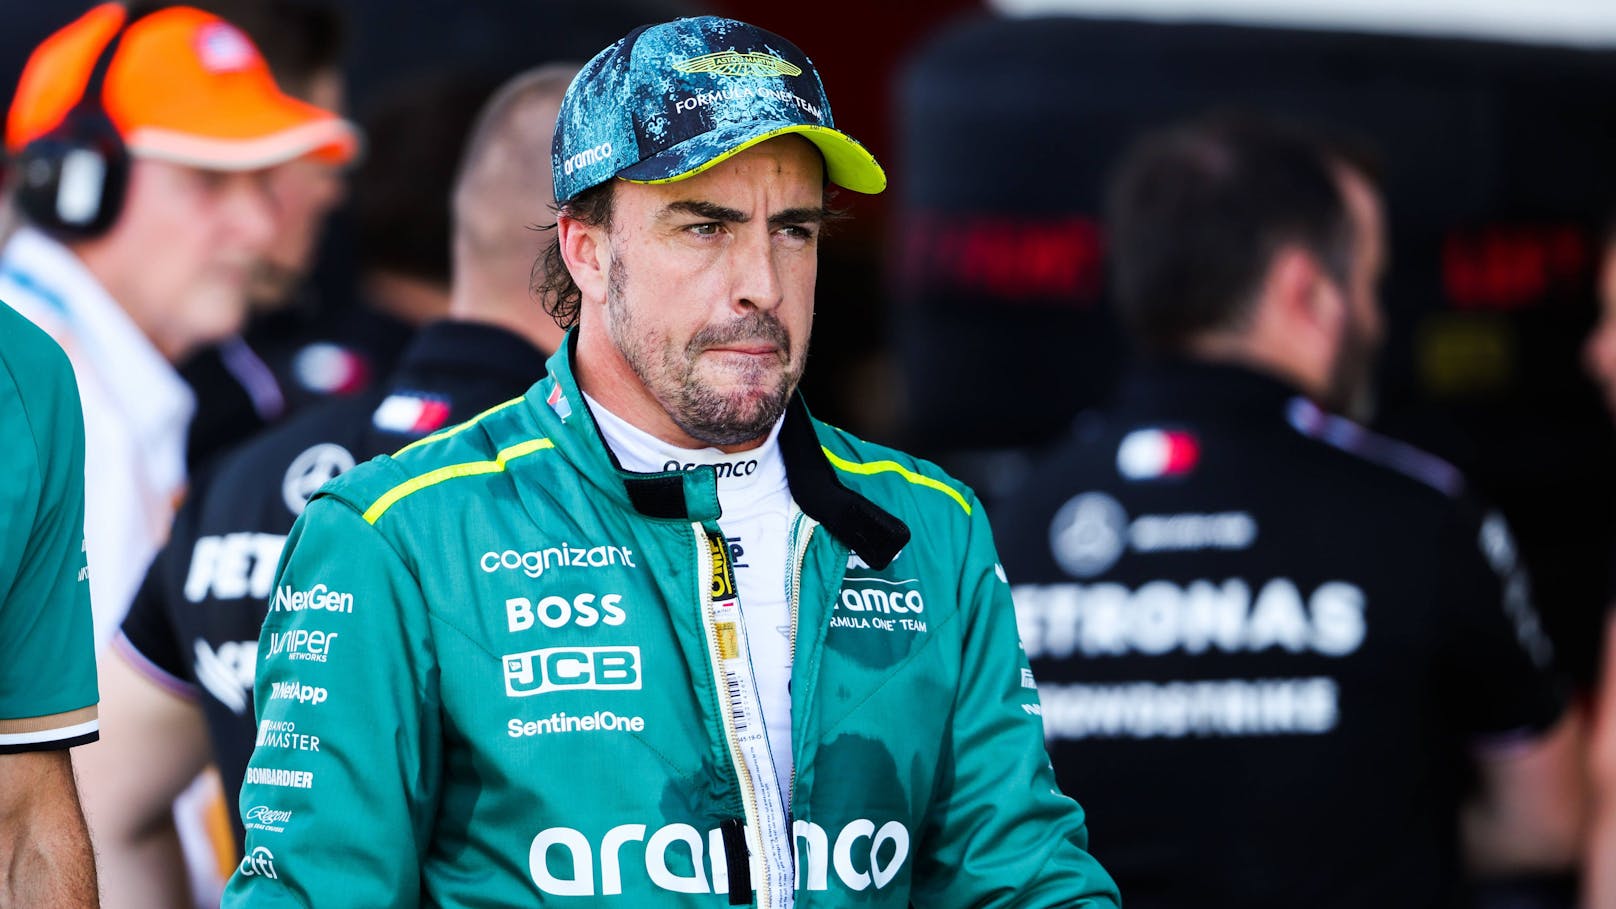 F1-Star Alonso tobt: "Es geht um künftige Generationen"